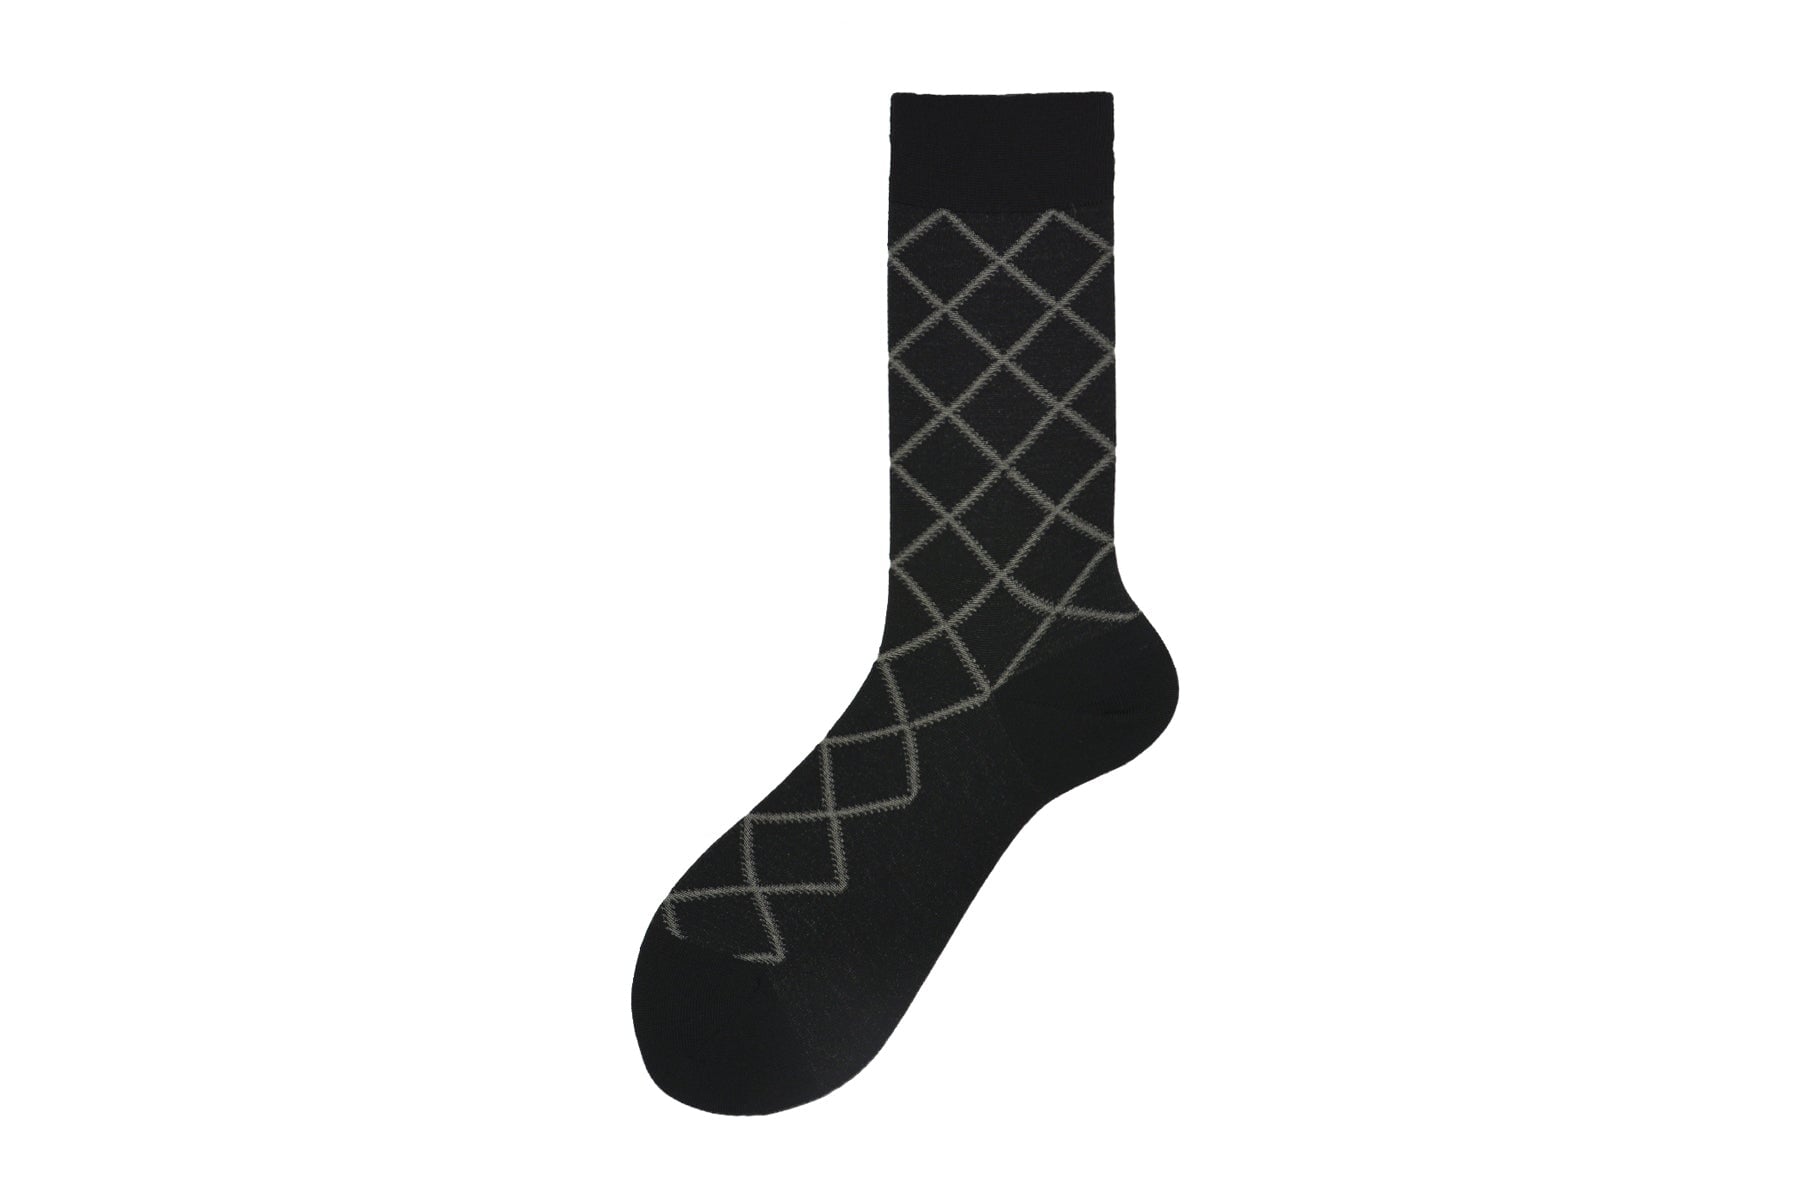 Herren Socken aus Merino Wolle in Schwarz- Chelsea Herren Socken Alto Milano 